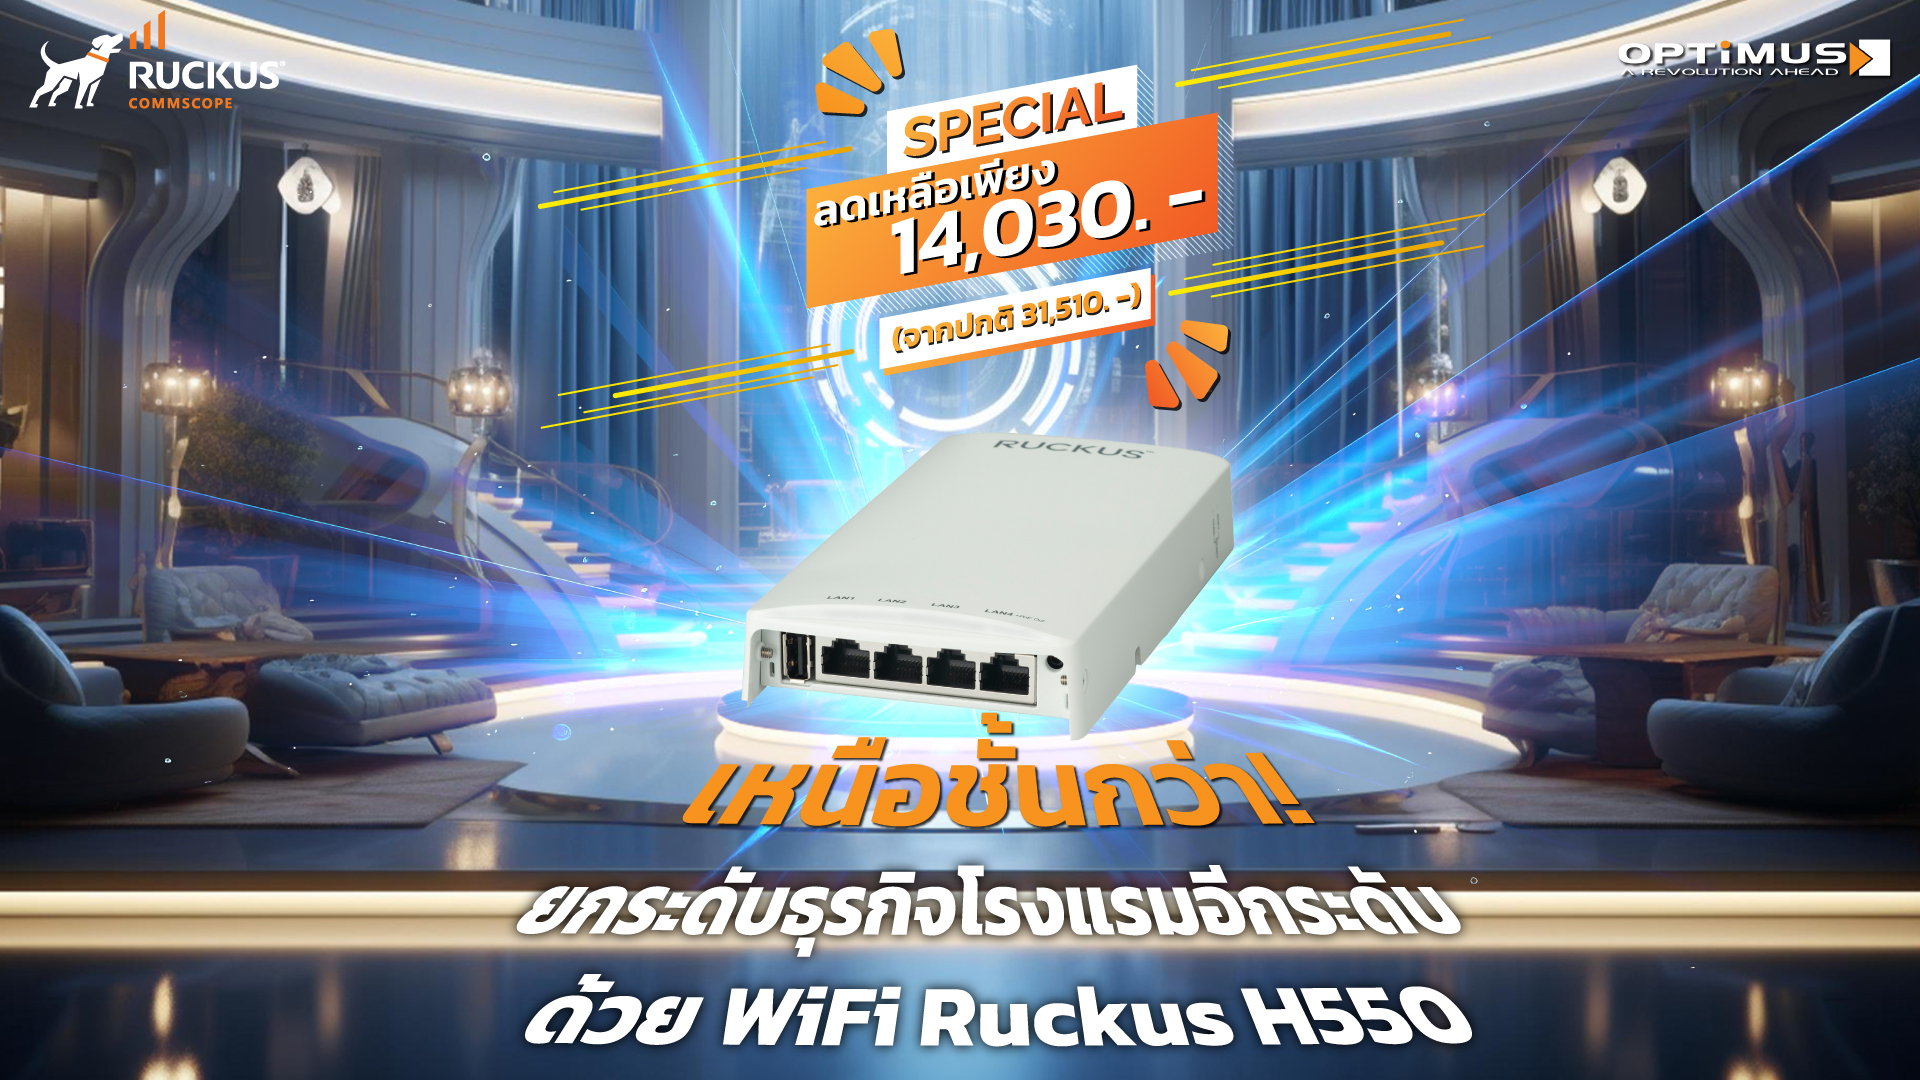 Ruckus H550